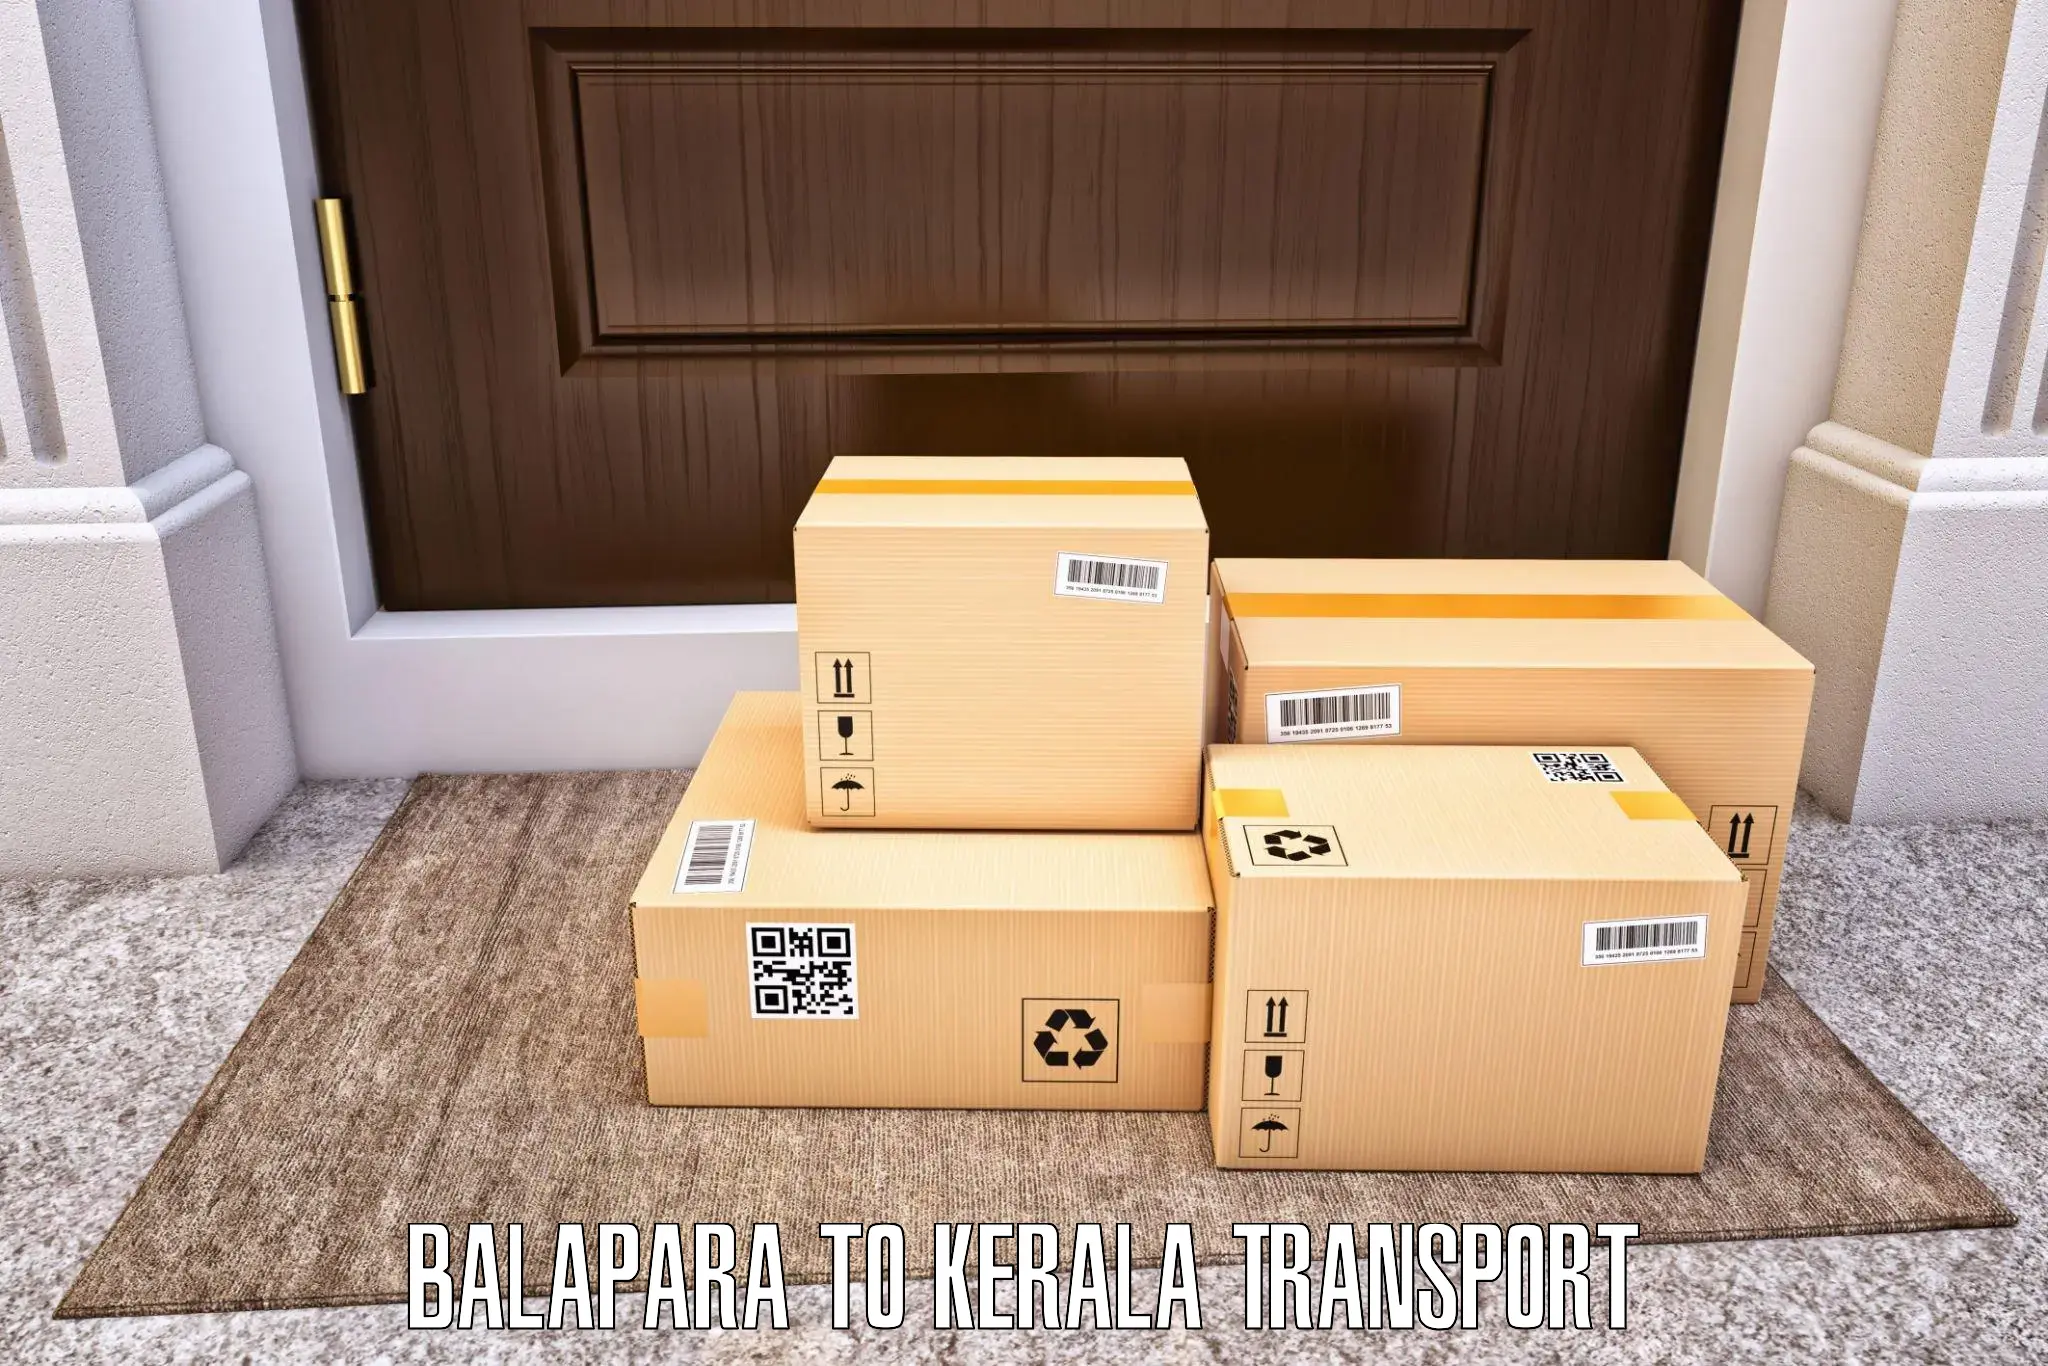 Online transport booking Balapara to Kuthuparamba